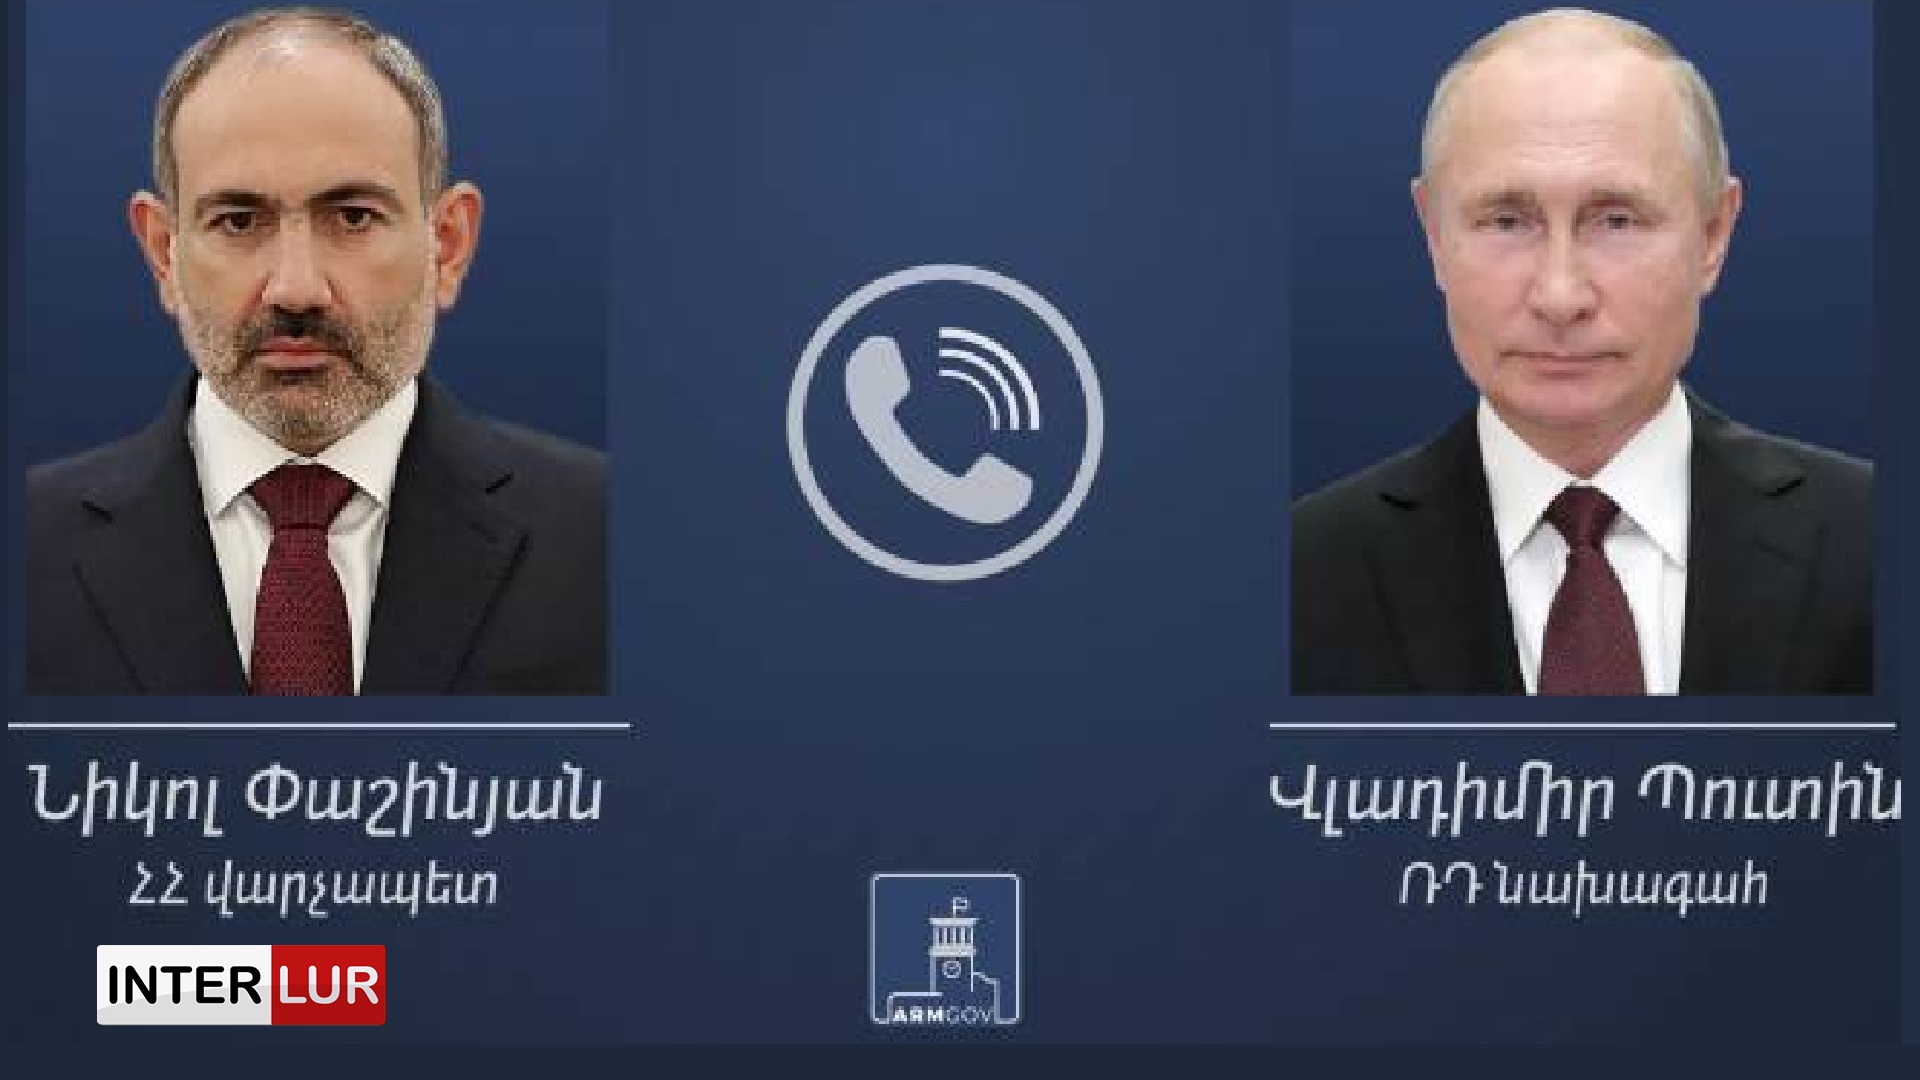 Հայաստանի Հանրապետության վարչապետ Նիկոլ Փաշինյանը և Ռուսաստանի Դաշնության նախագահ Վլադիմիր Պուտինը մարտի 25-ին հեռախոսազրույց կունենան